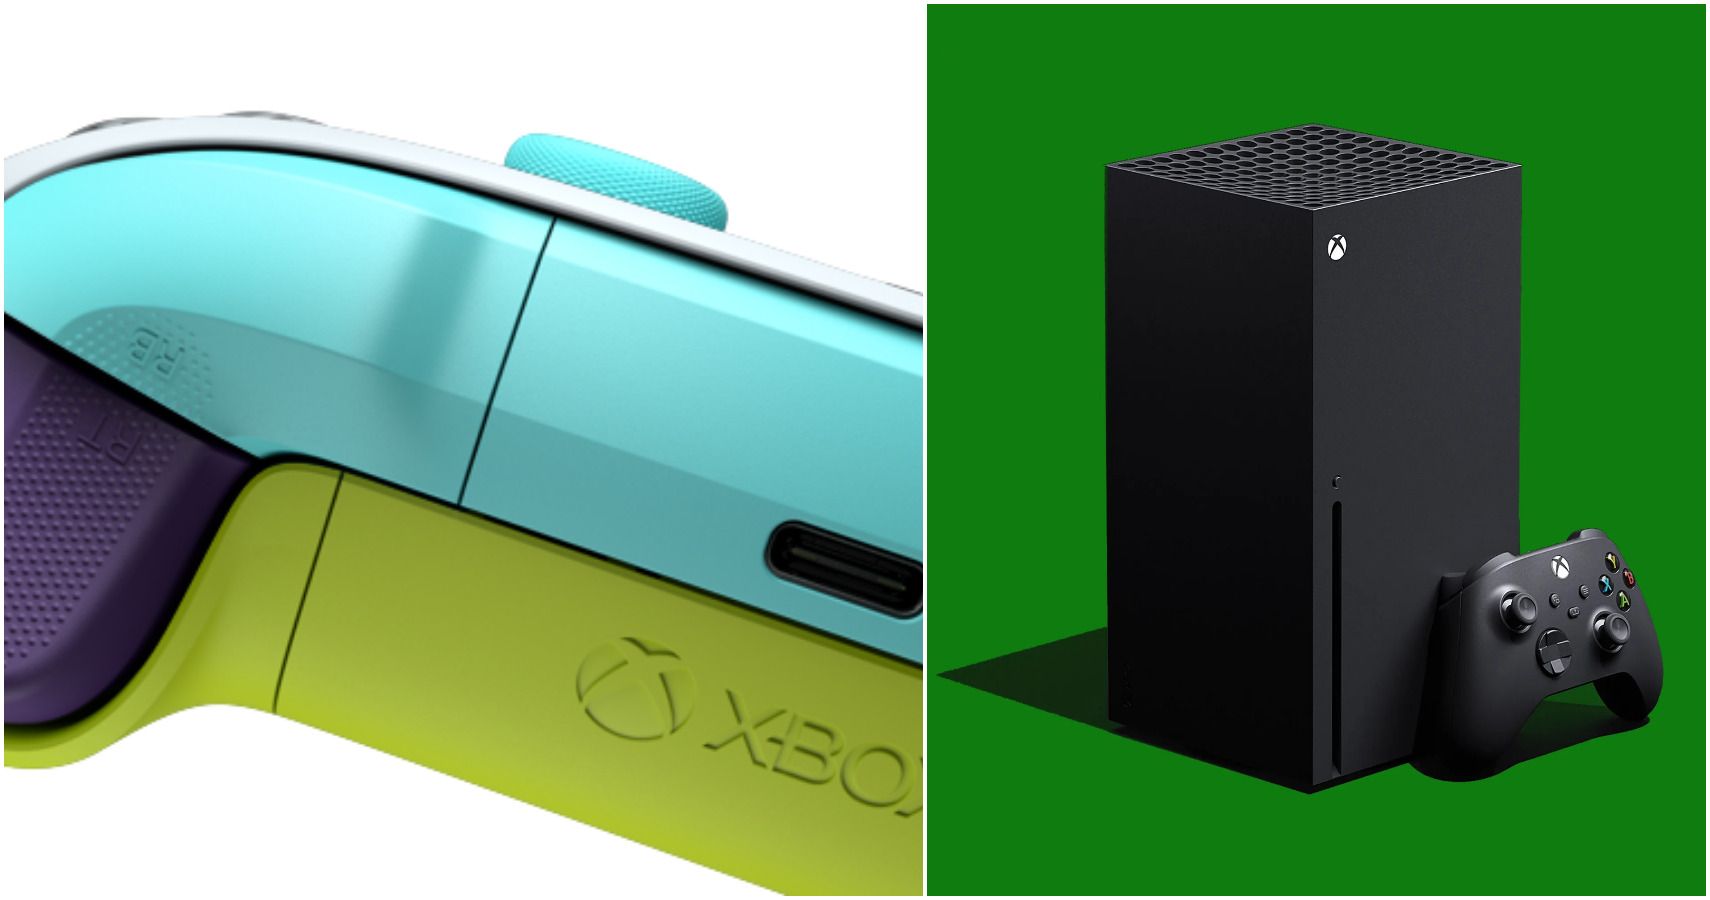 Xbox Design Lab